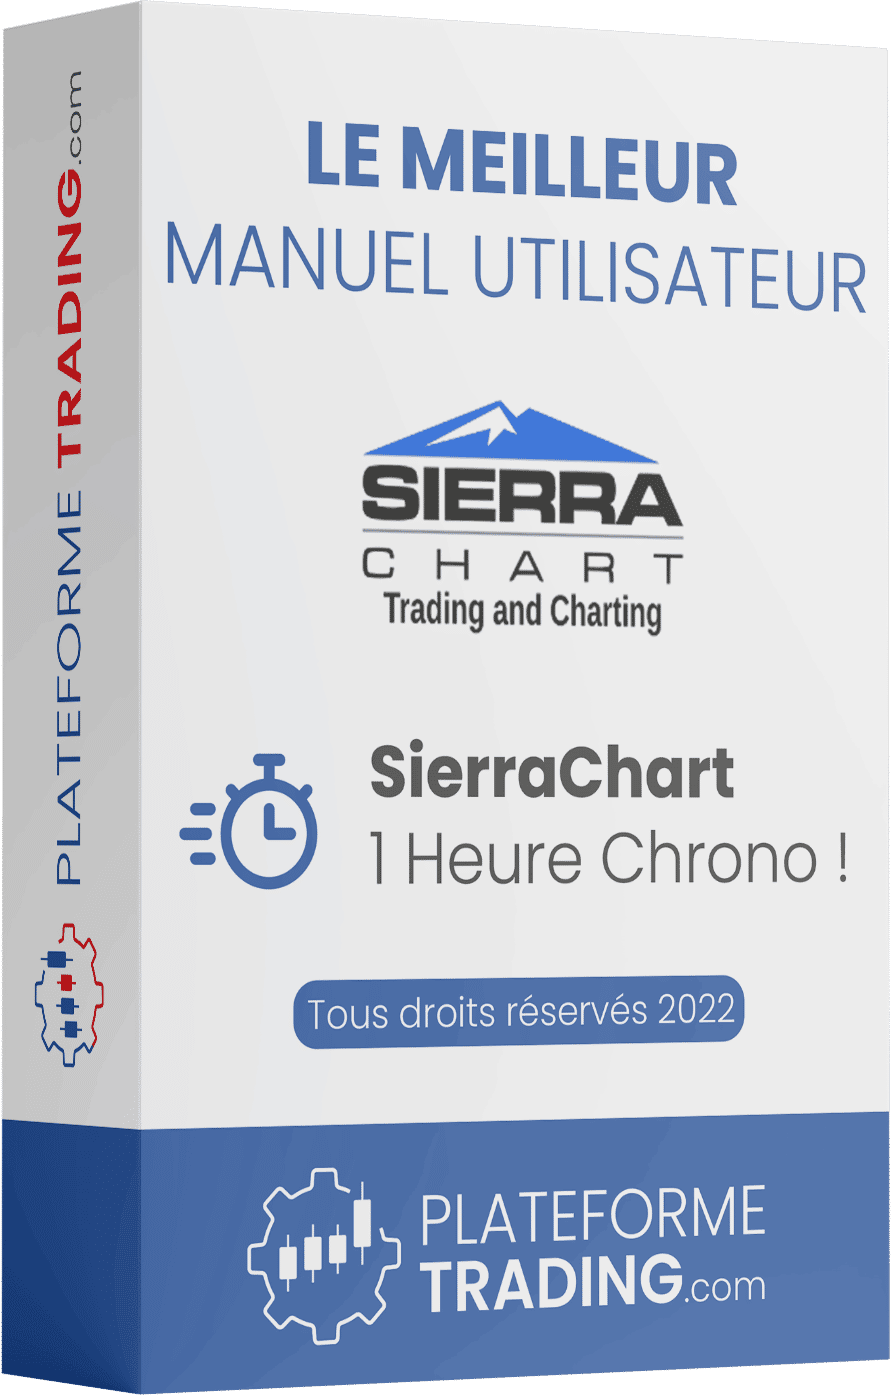 Sierra Chart - Meilleur Manuel Utilisateur du Web